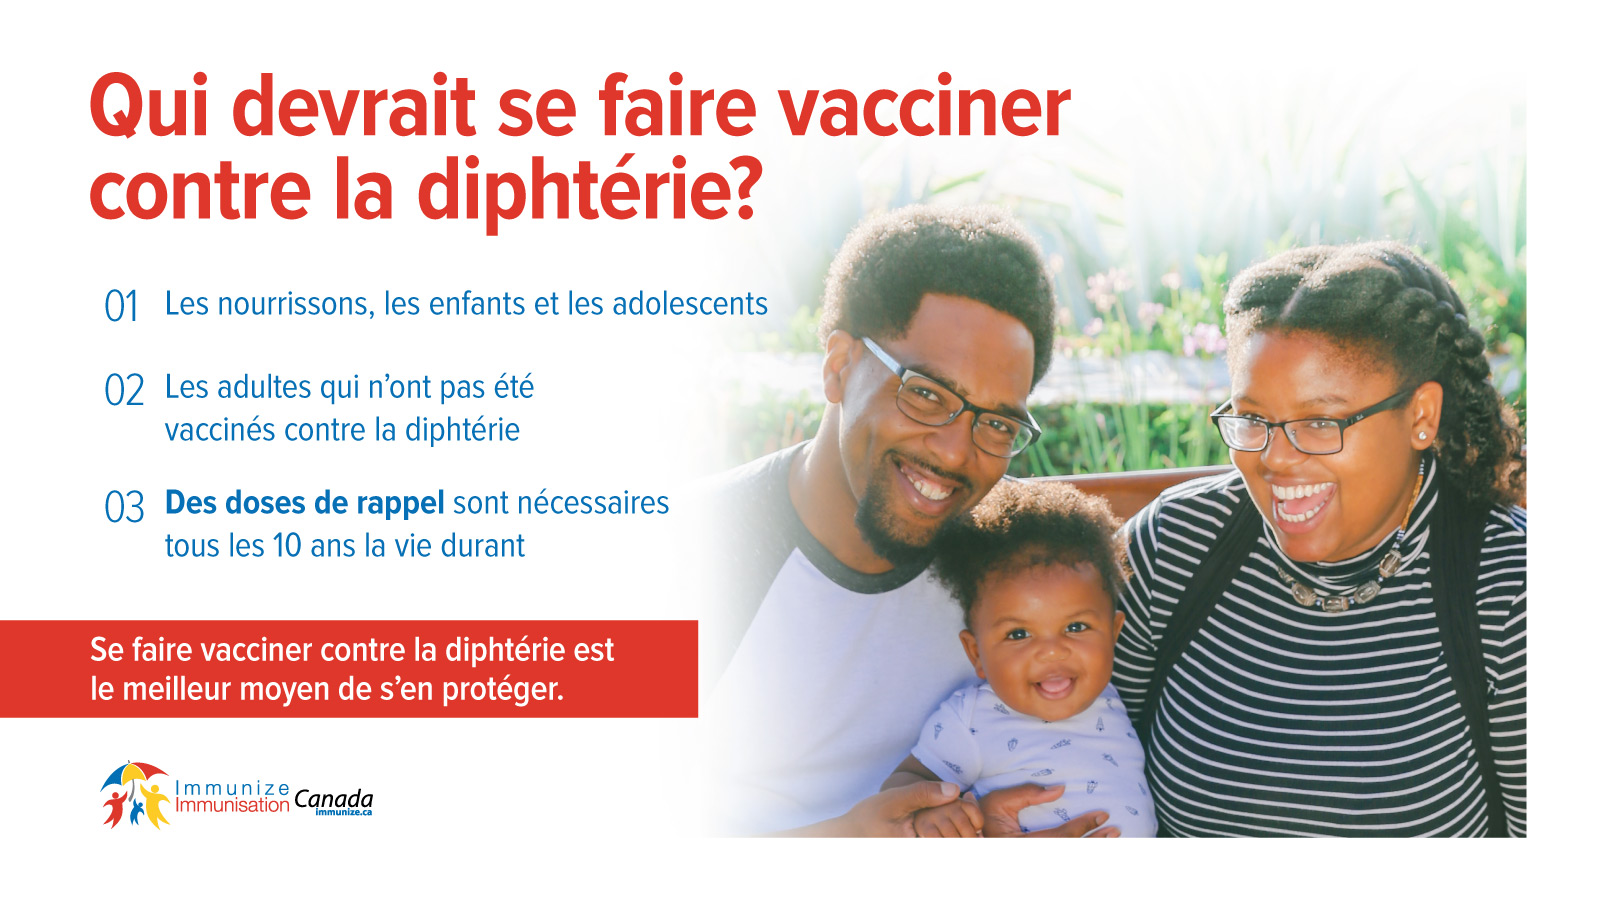 Qui devrait se faire vacciner contre la diphtérie? - image pour Twitter et Facebook